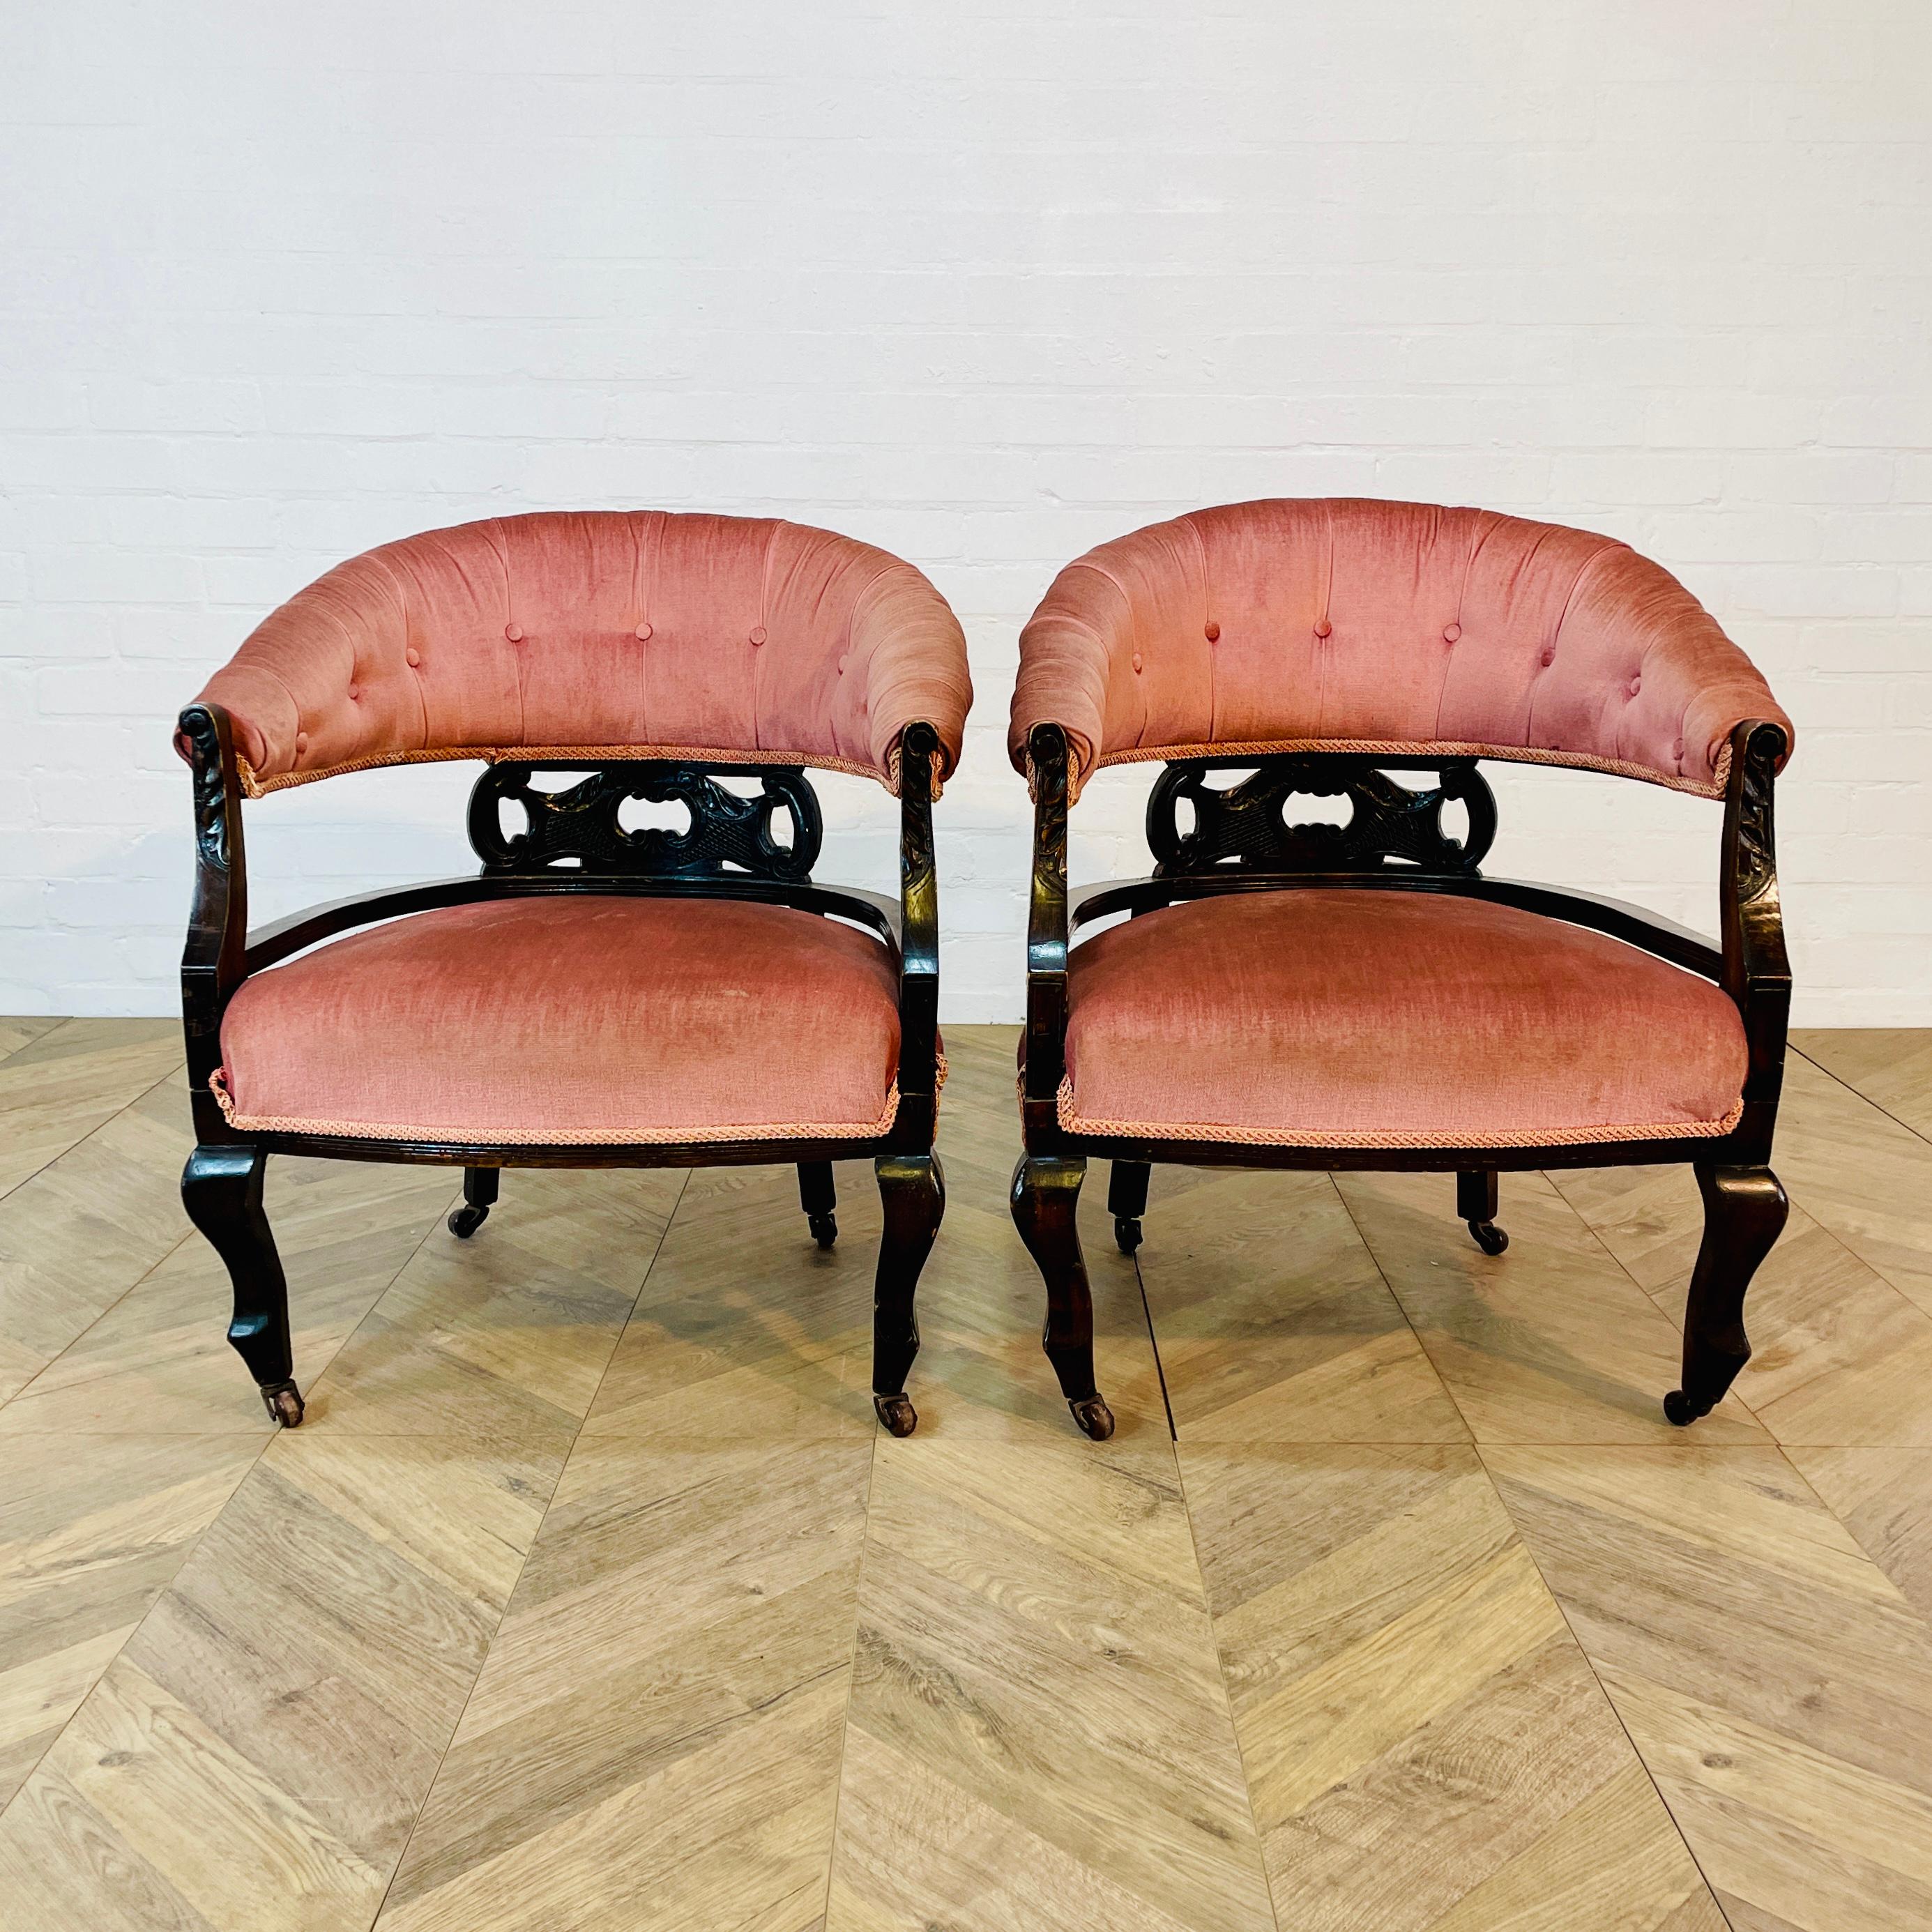 Ein Paar gut proportionierte, niedrige Sessel, CIRCA 1900s.

Der Sessel verfügt über eine schöne geschwungene Rückenlehne mit detaillierter Arbeit und er sitzt auf Rollen.

Die rosafarbene Polsterung ist in gutem antiken Zustand, ohne sichtbare